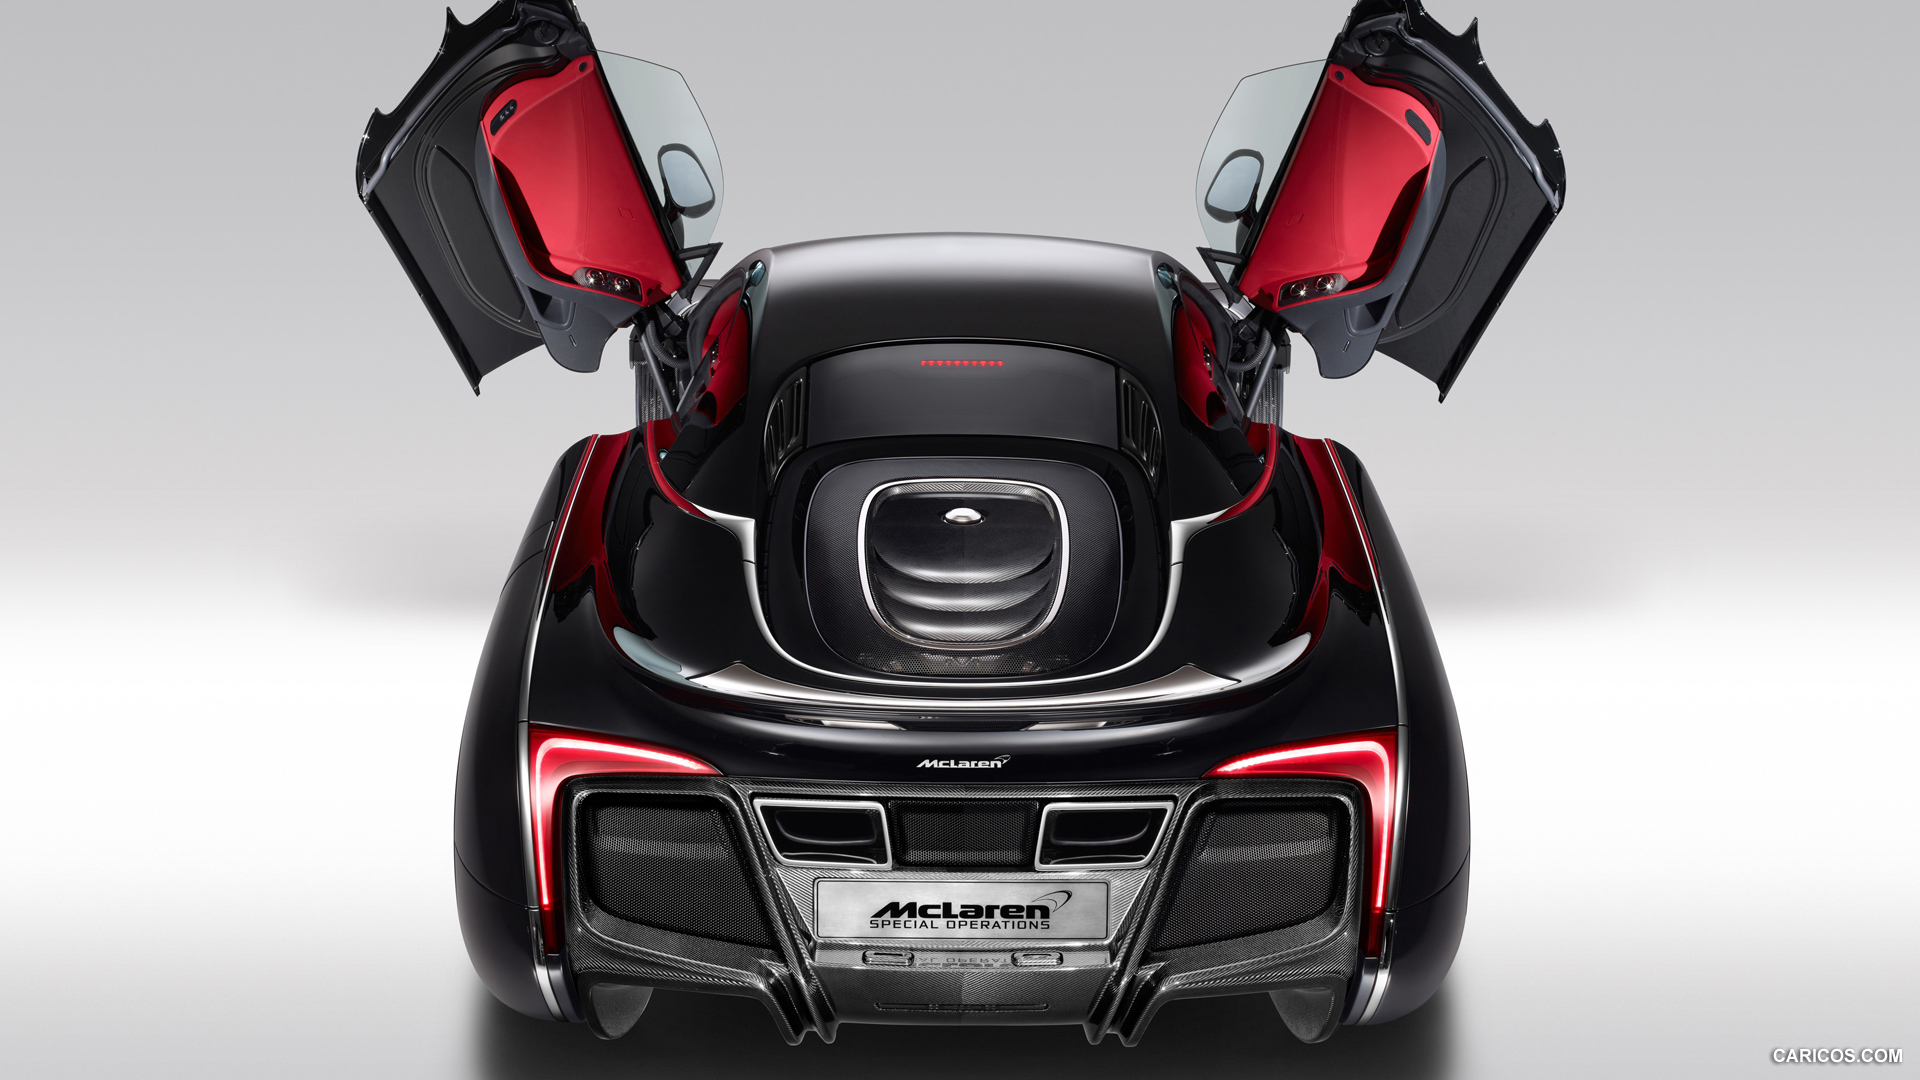 2012 McLaren X-1 Concept - Doors Open - , #10 of 12